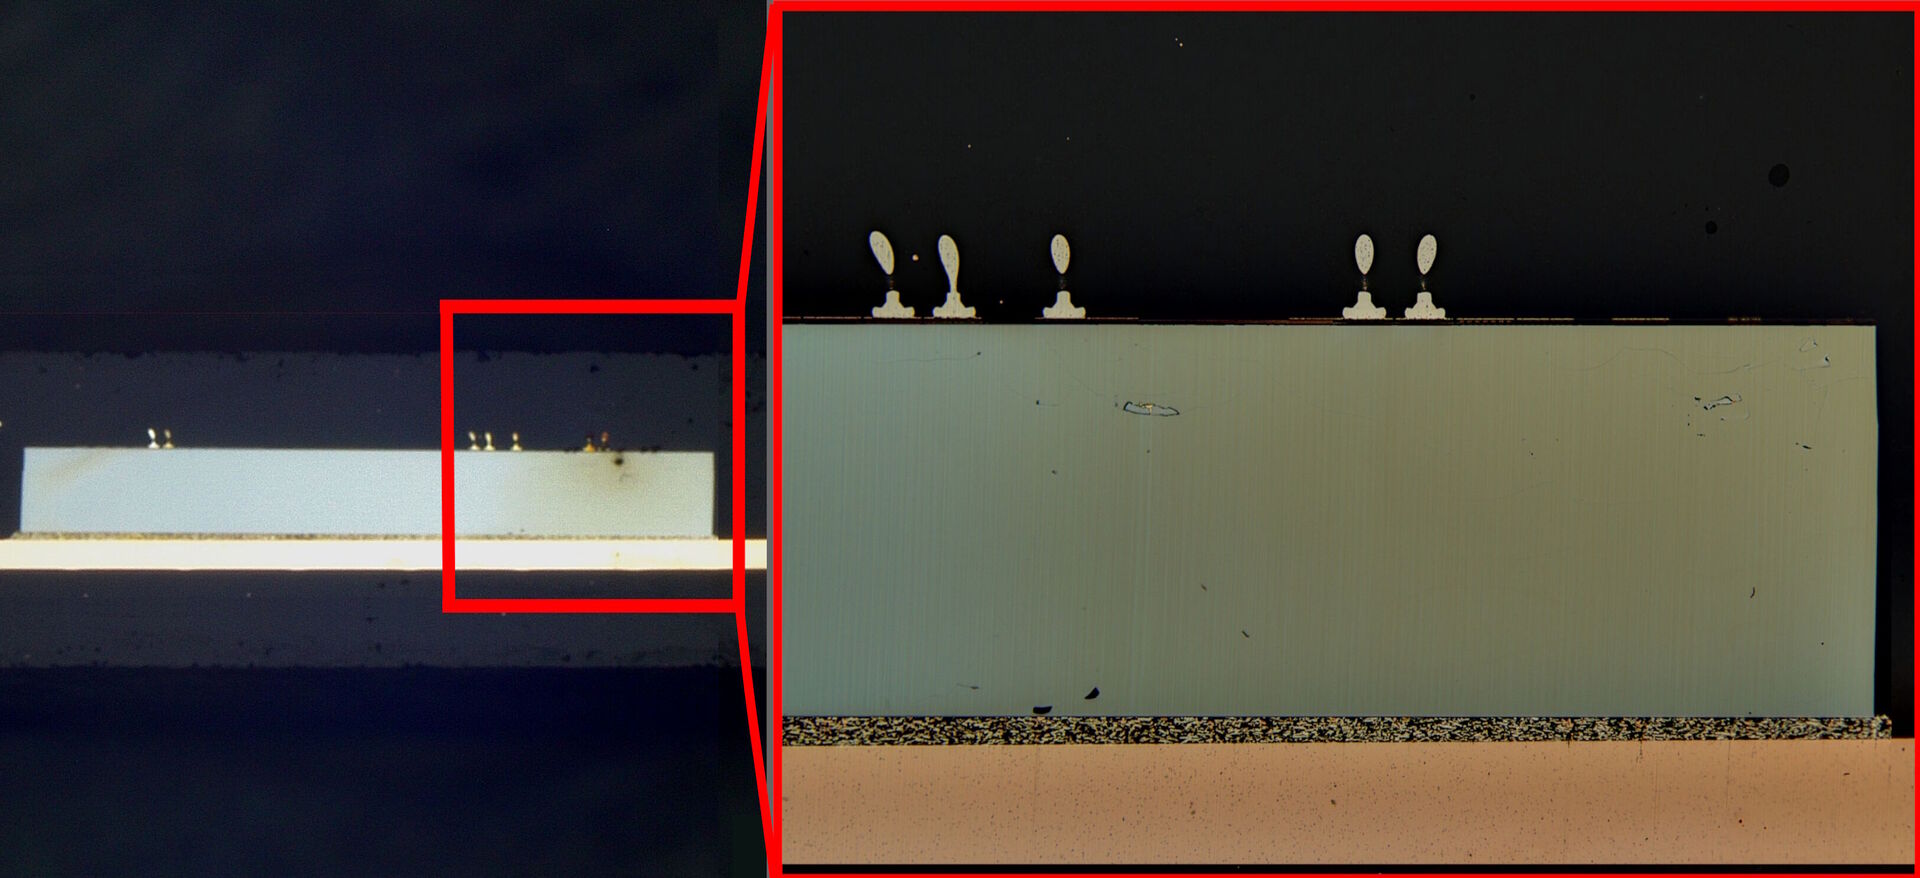 Lichtmikroskopbilder des Querschnitts eines IC-Chips: Links) Übersicht mit geringer Vergrößerung und Rechts) Ansicht mit höherer Vergrößerung des Untersuchungsbereichs (mit rotem Kästchen markiert). Bei höherer Vergrößerung sind weitere Details der Drahtbindung und der Schichten im Chip zu sehen.